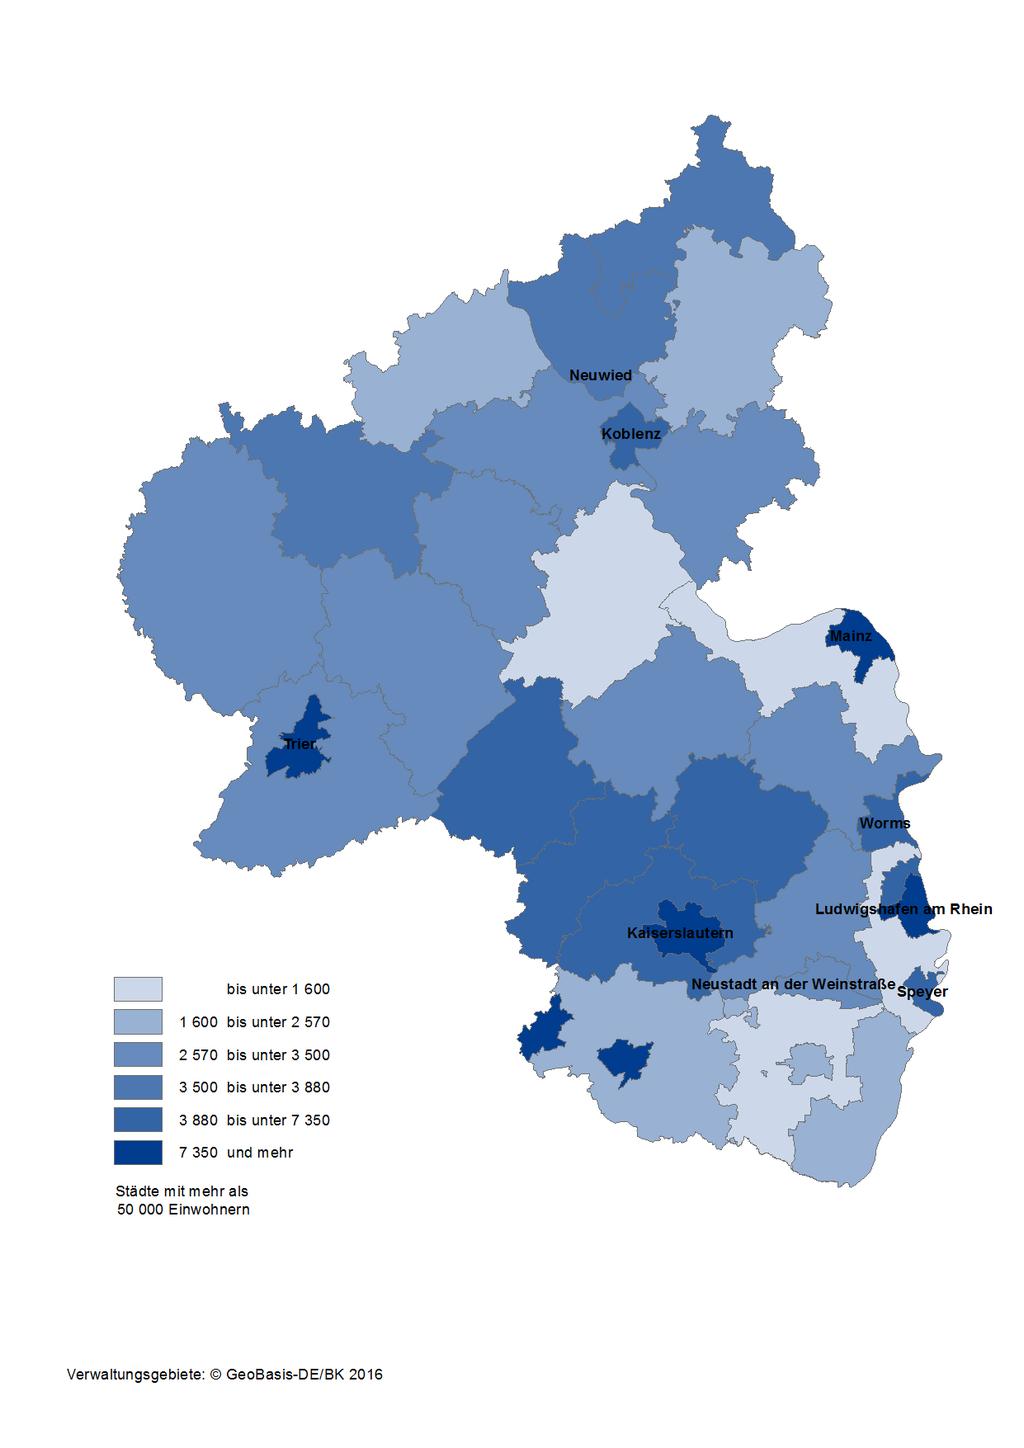 Karte 15: Integrierte kommunale Schulden der Kreisgebiete und kreisfreien Städte in Rheinland- Pfalz am 31.12.